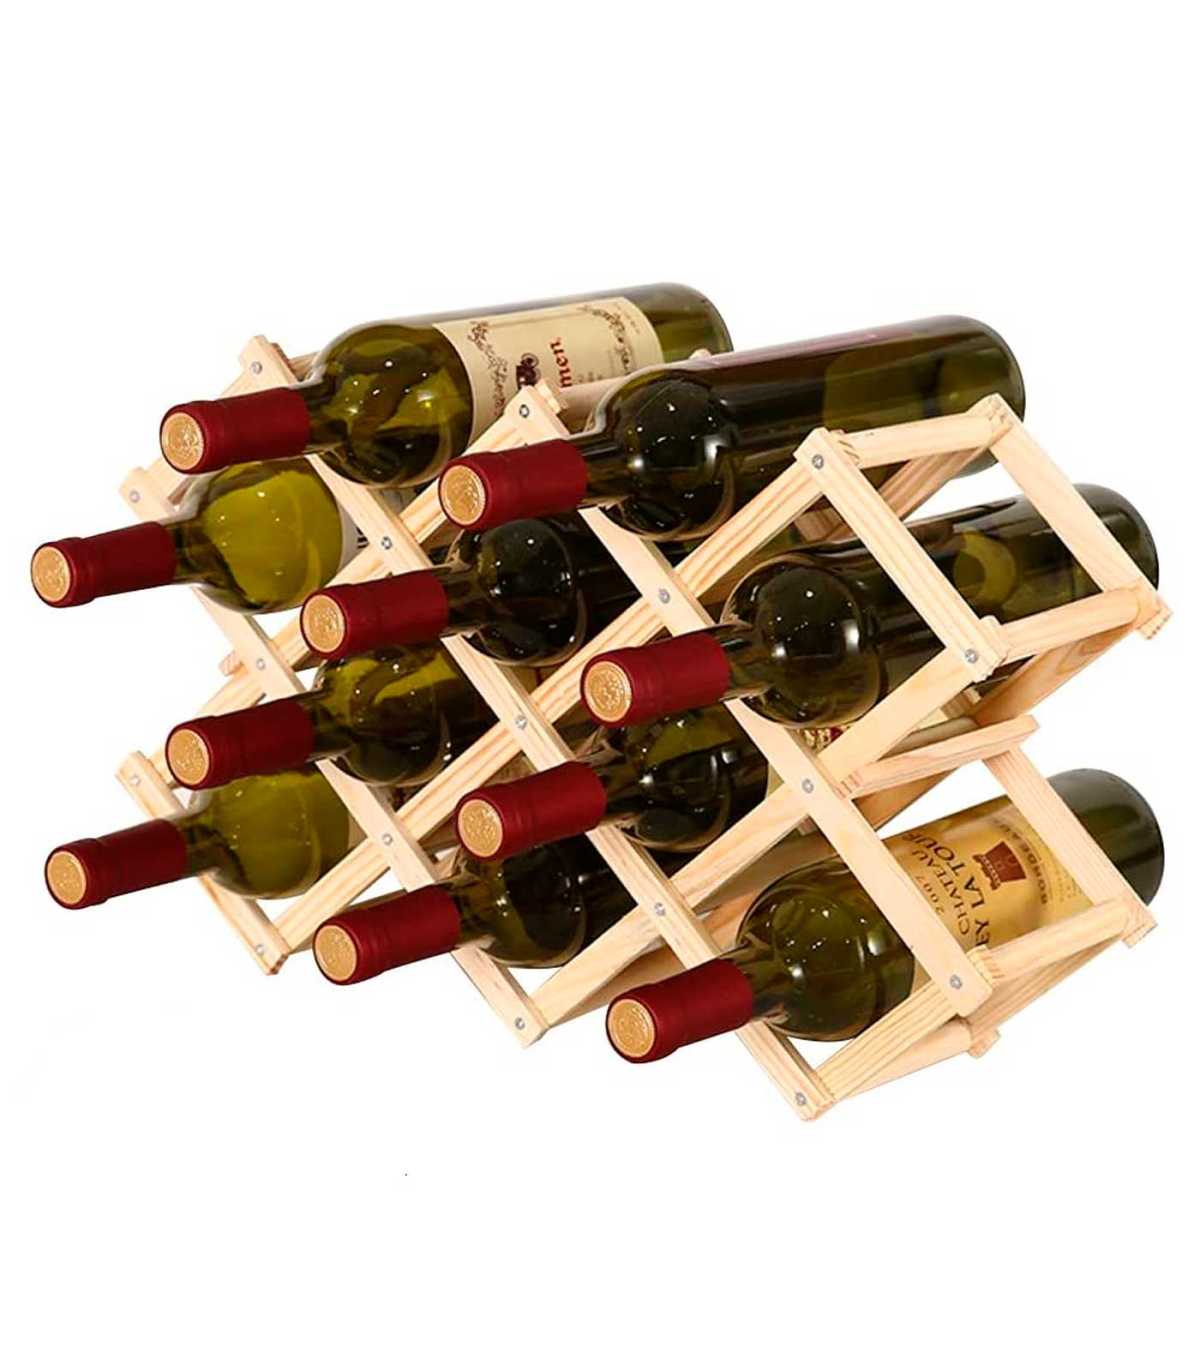 Tradineur - Botellero plegable de bambú, soporte organizador de botellas de  vino, almacenamiento, exhibición de licores, barra d